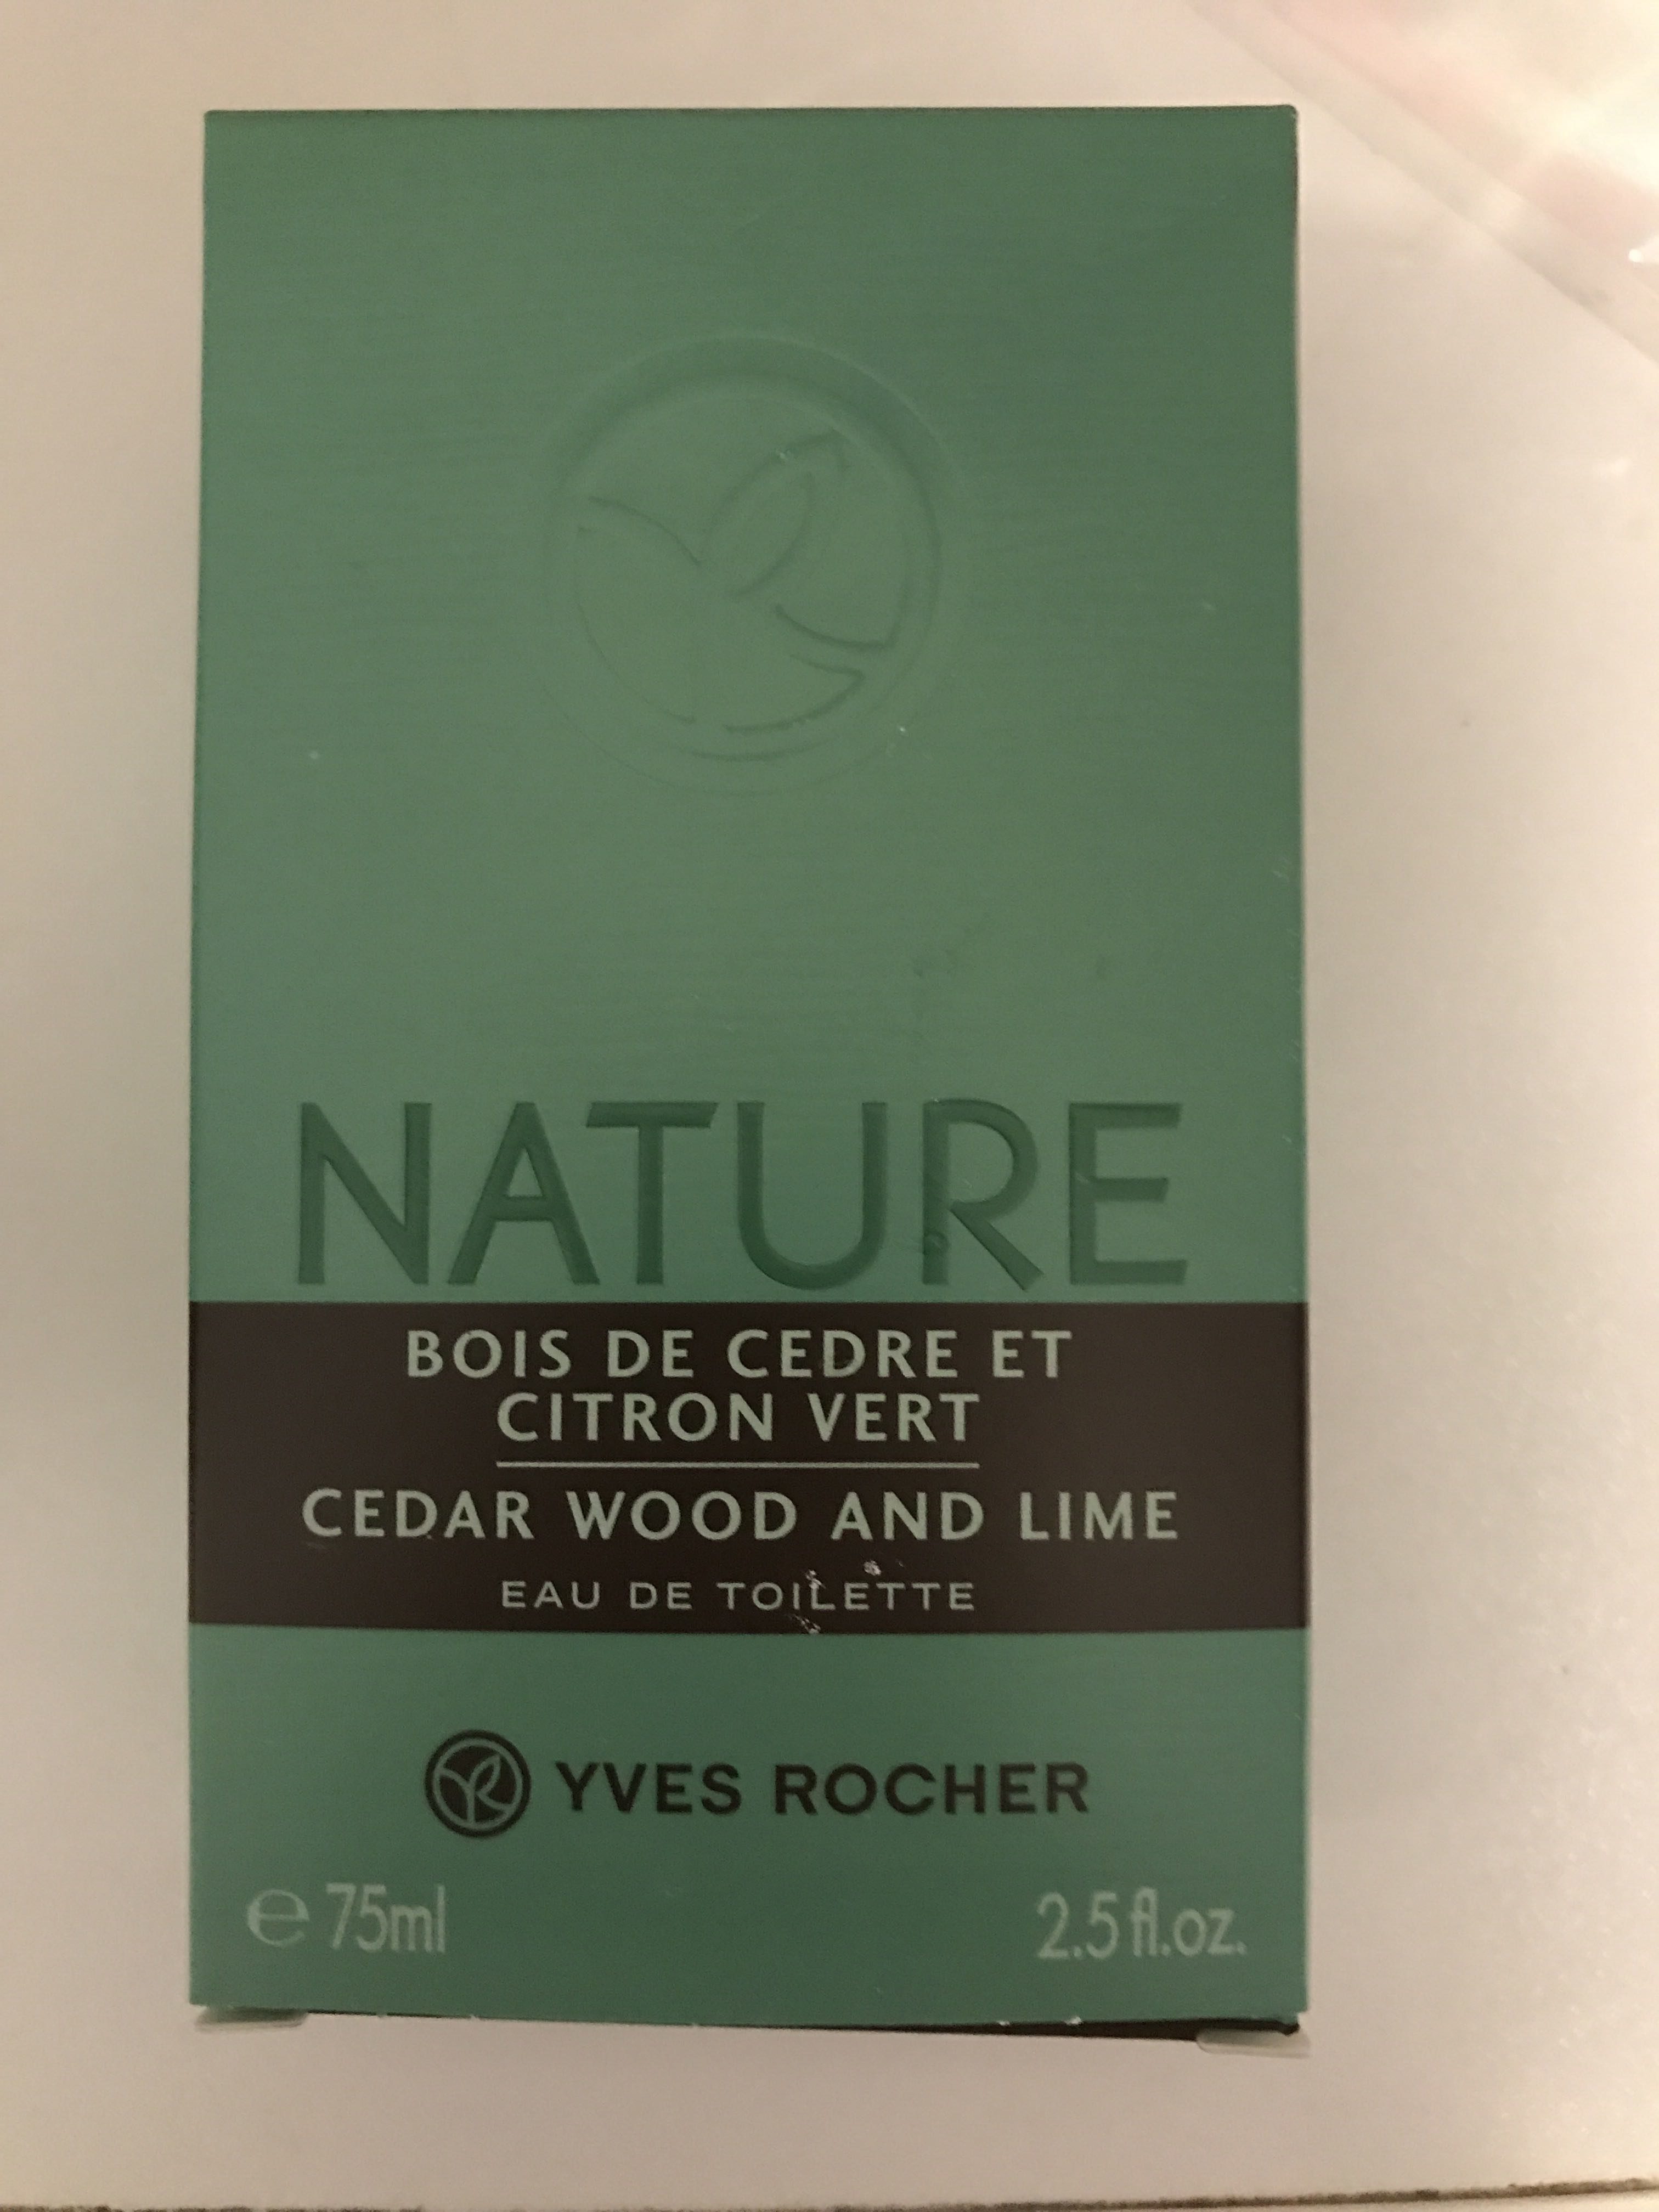 Nature Bois de cèdre et Citron vert - Продукт - fr